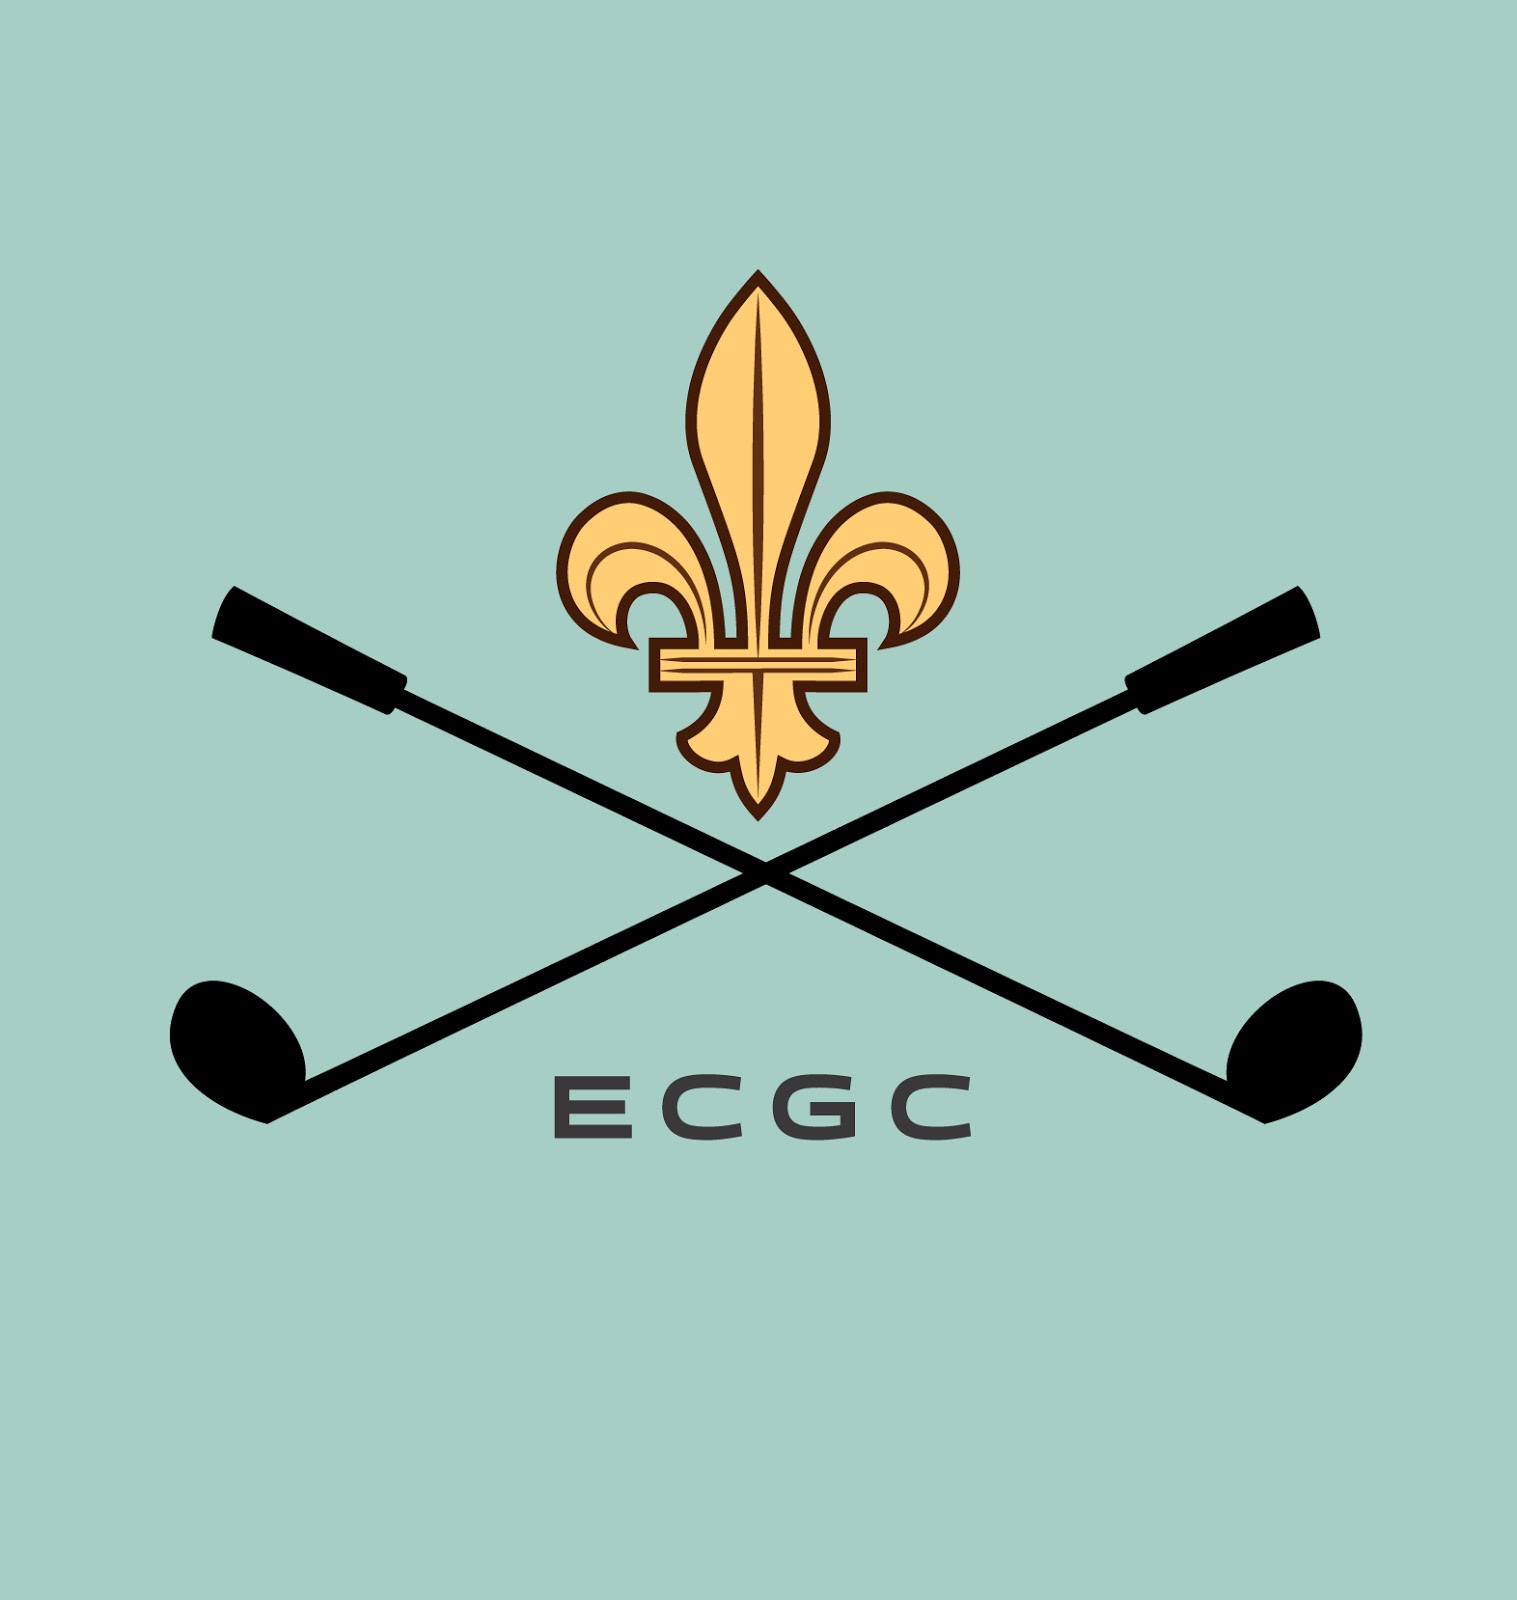 Best Golf Club Logos